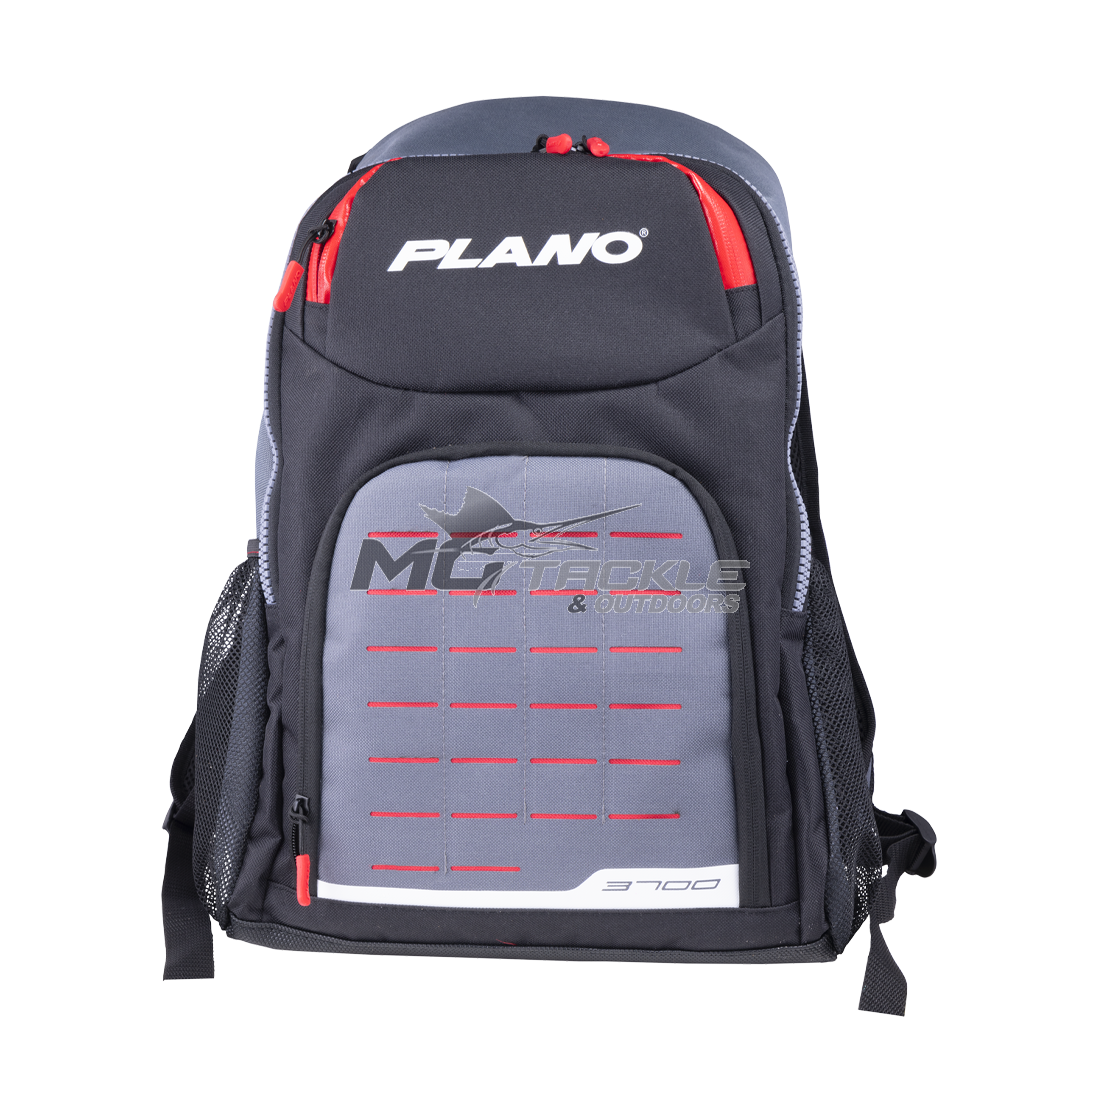 Plano 3700 Weekend Series Tackle Bag